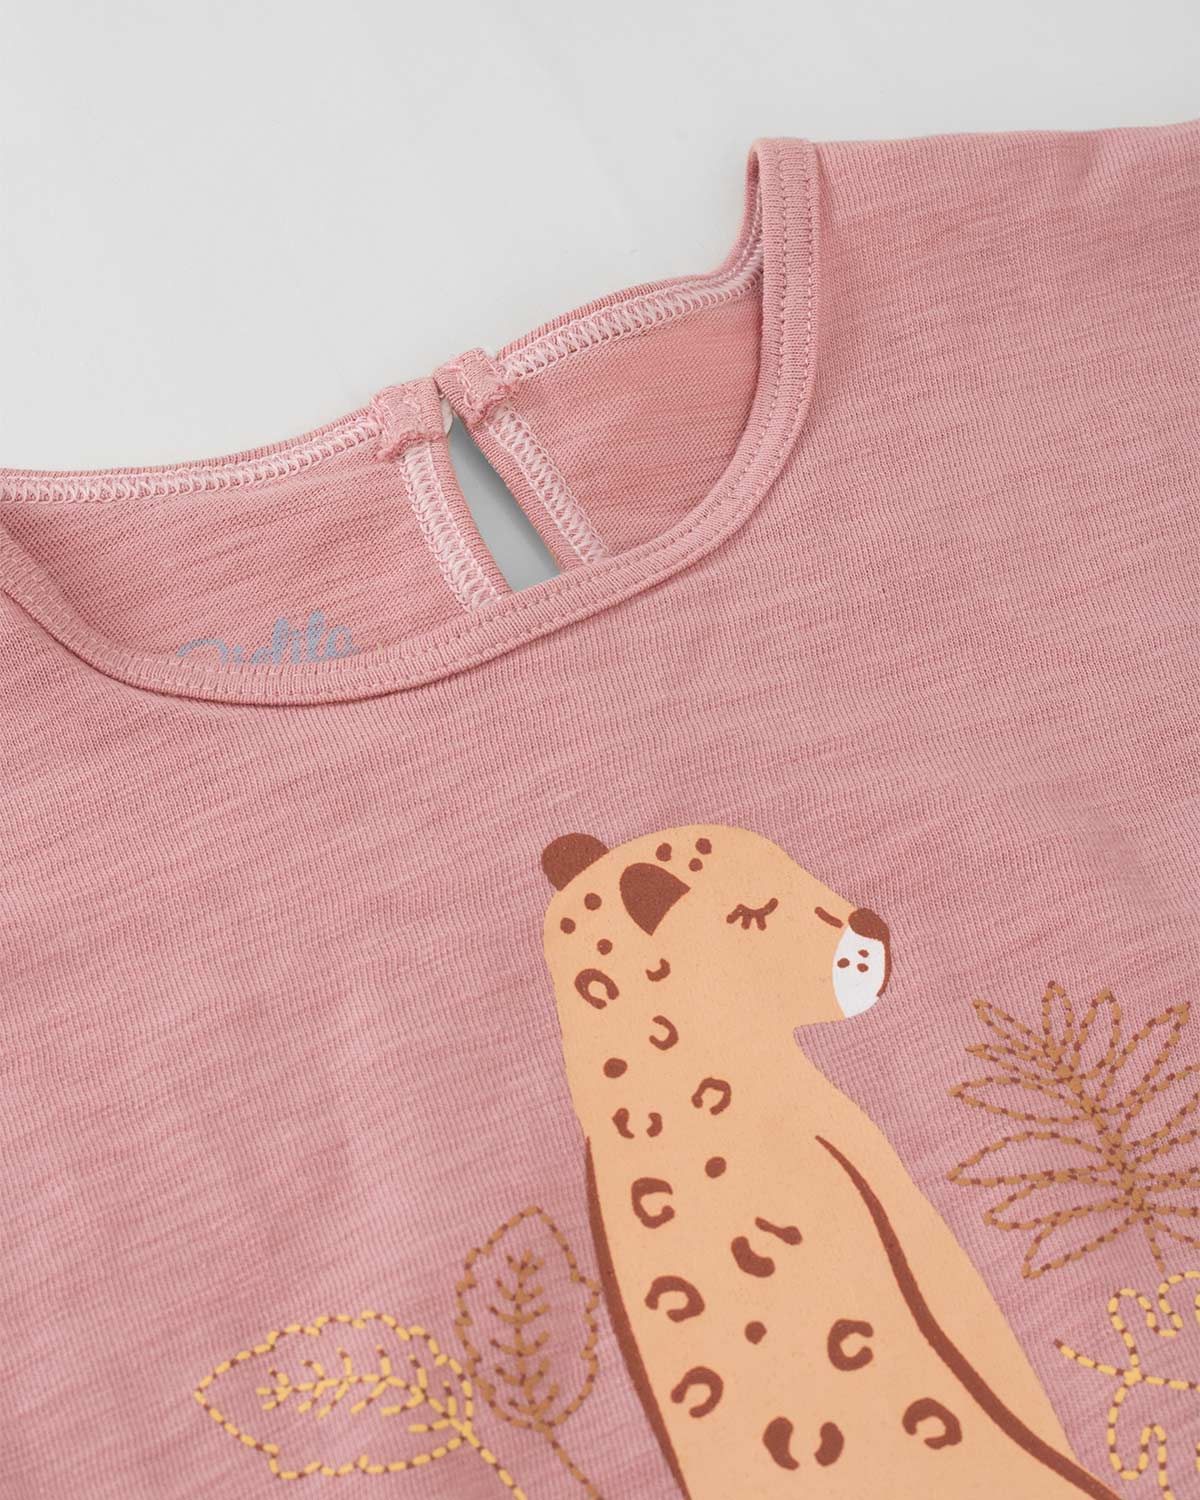 Camiseta palo de rosa con estampado y detalle de nudo para niña